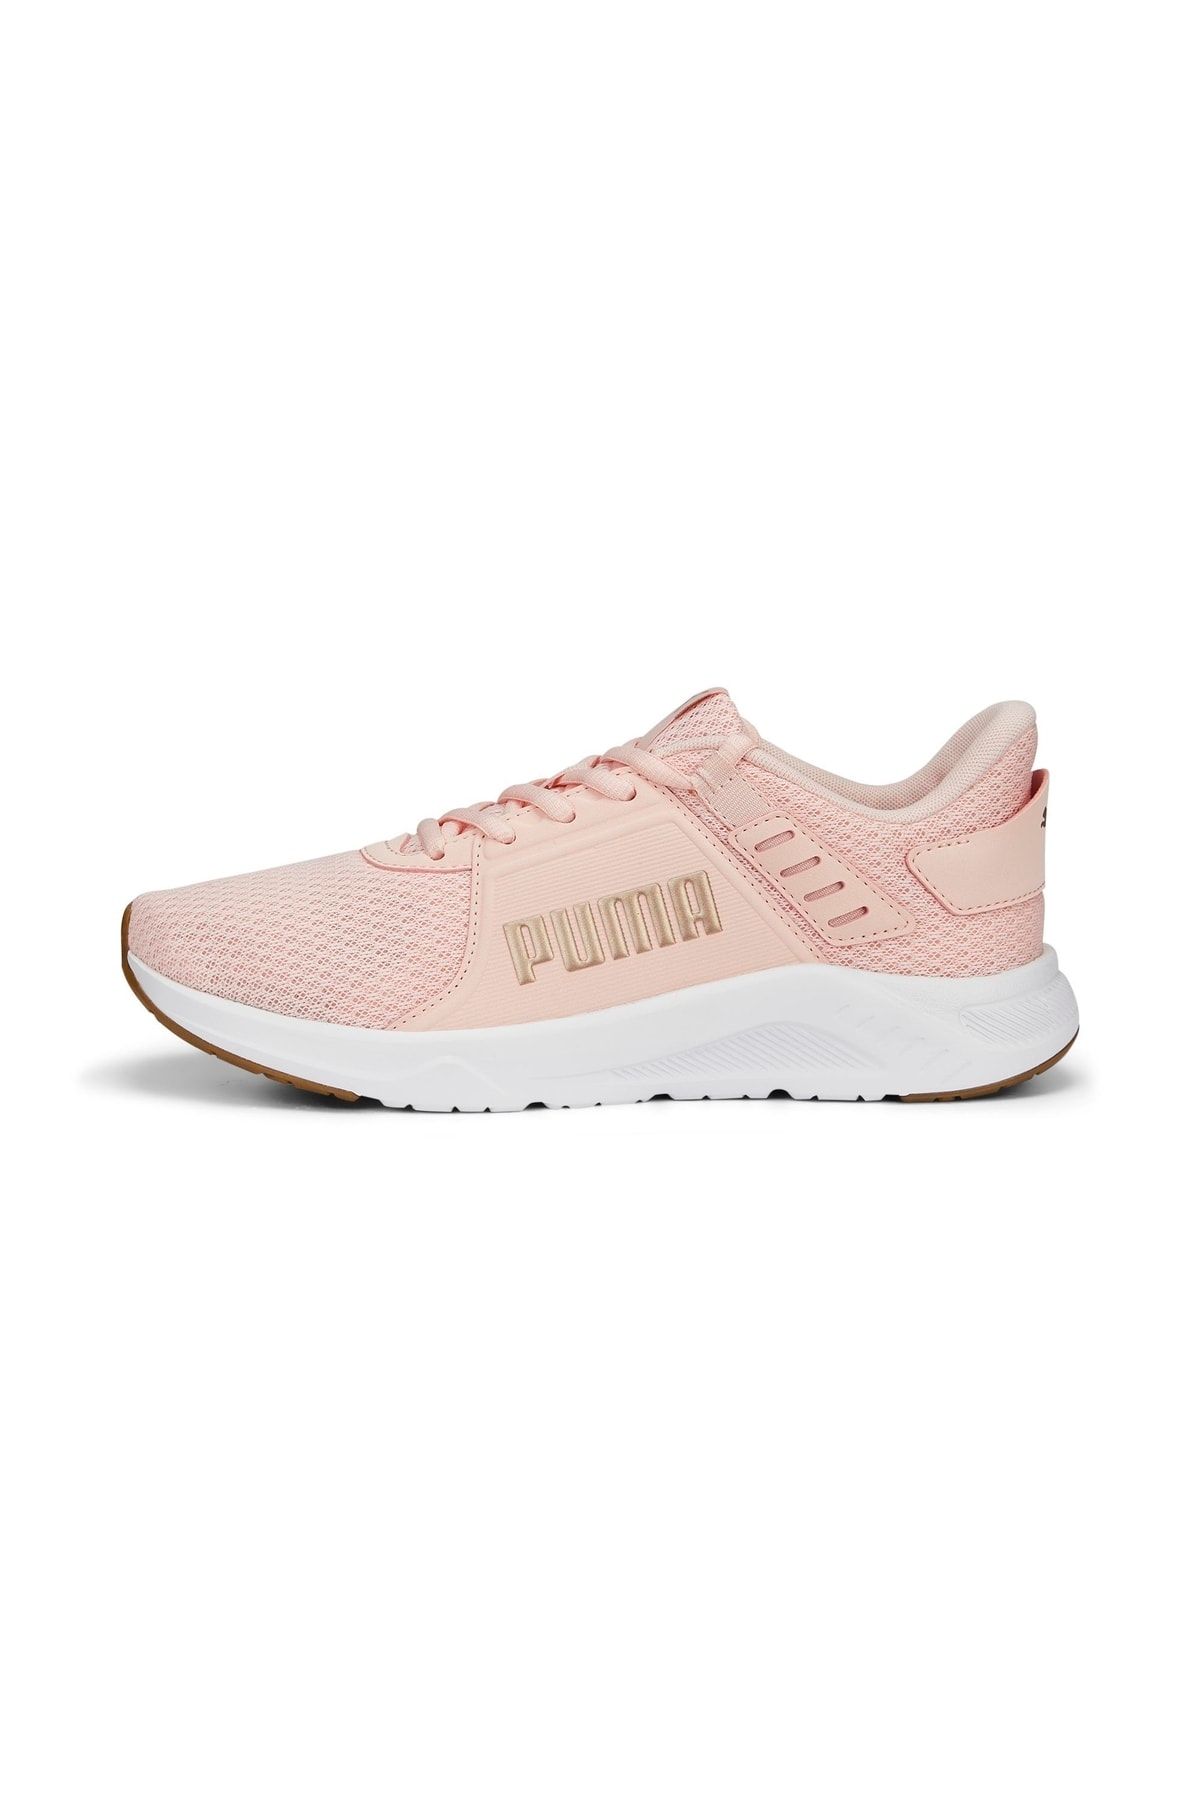 Puma Ftr Connect Rose Dust Erkek Yürüyüş Ayakkabısı